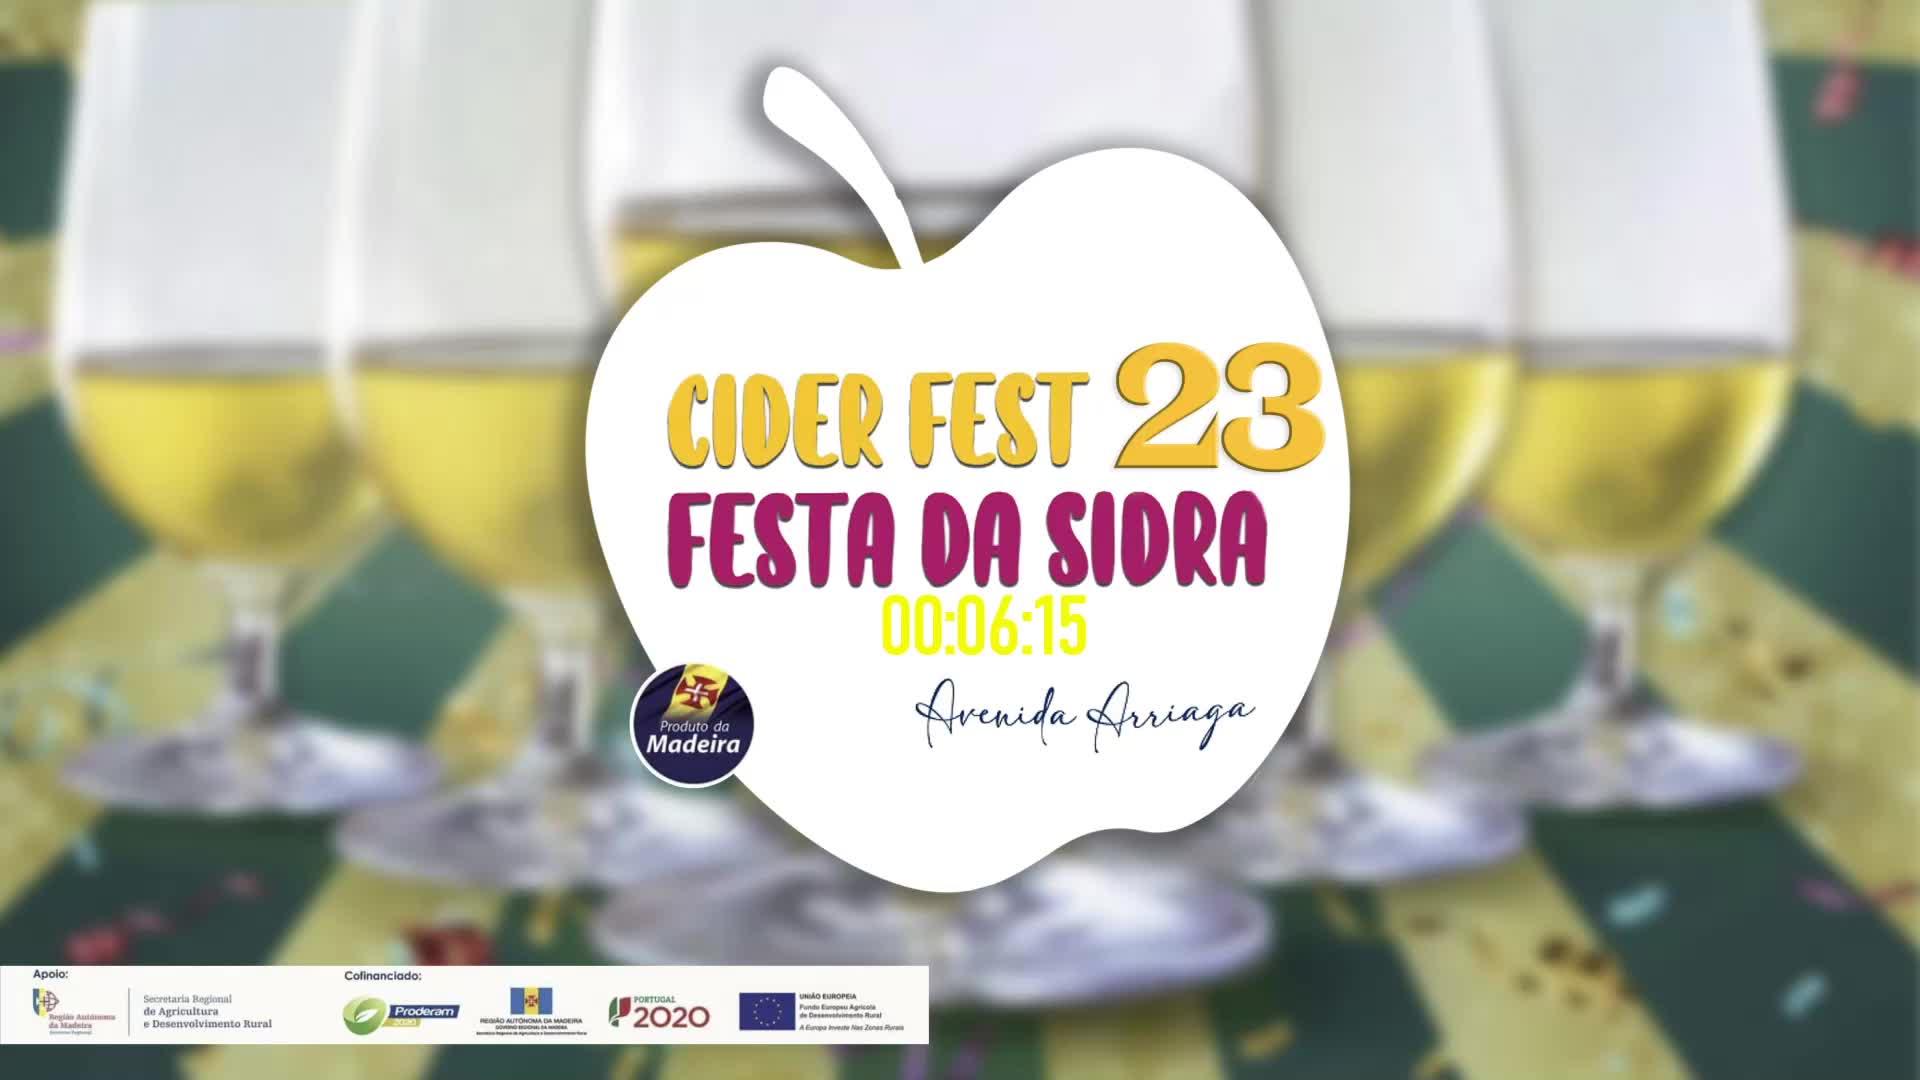 Cider Fest - Festa da Cidra | 2023